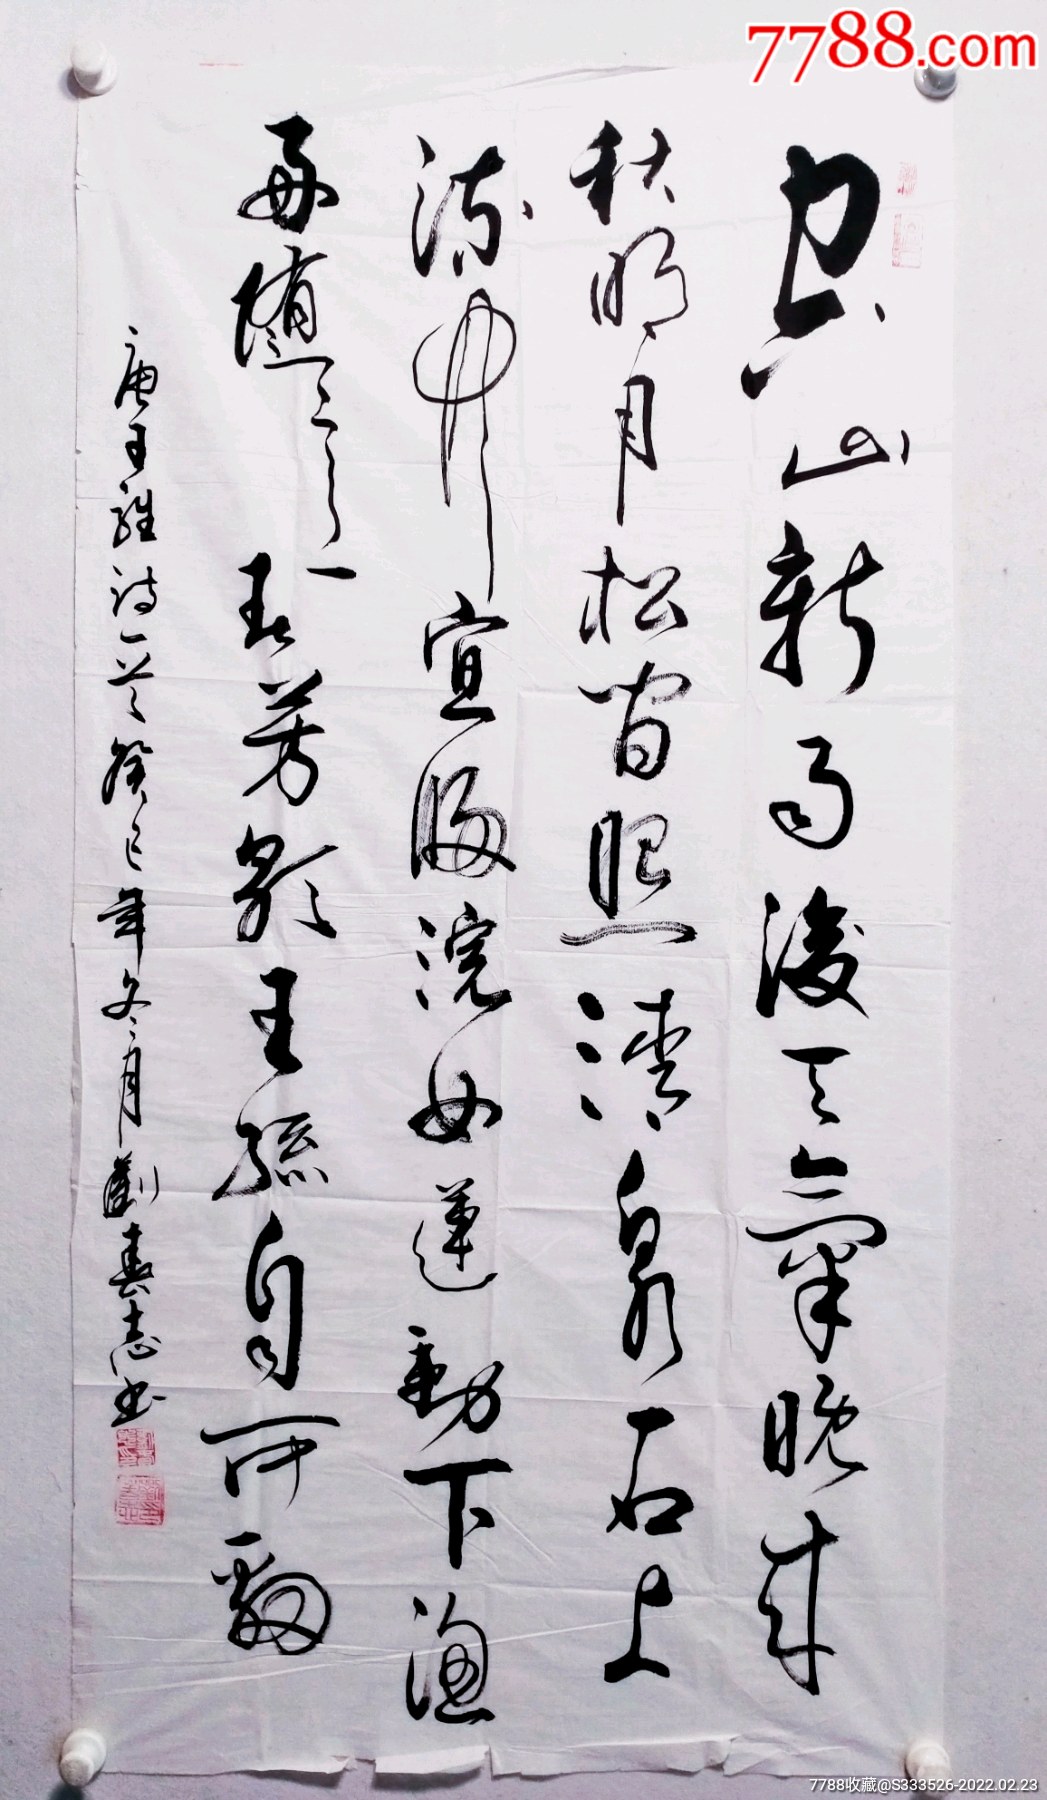 刘春志四尺整纸唐王维诗一首书法作品一幅尺寸13770